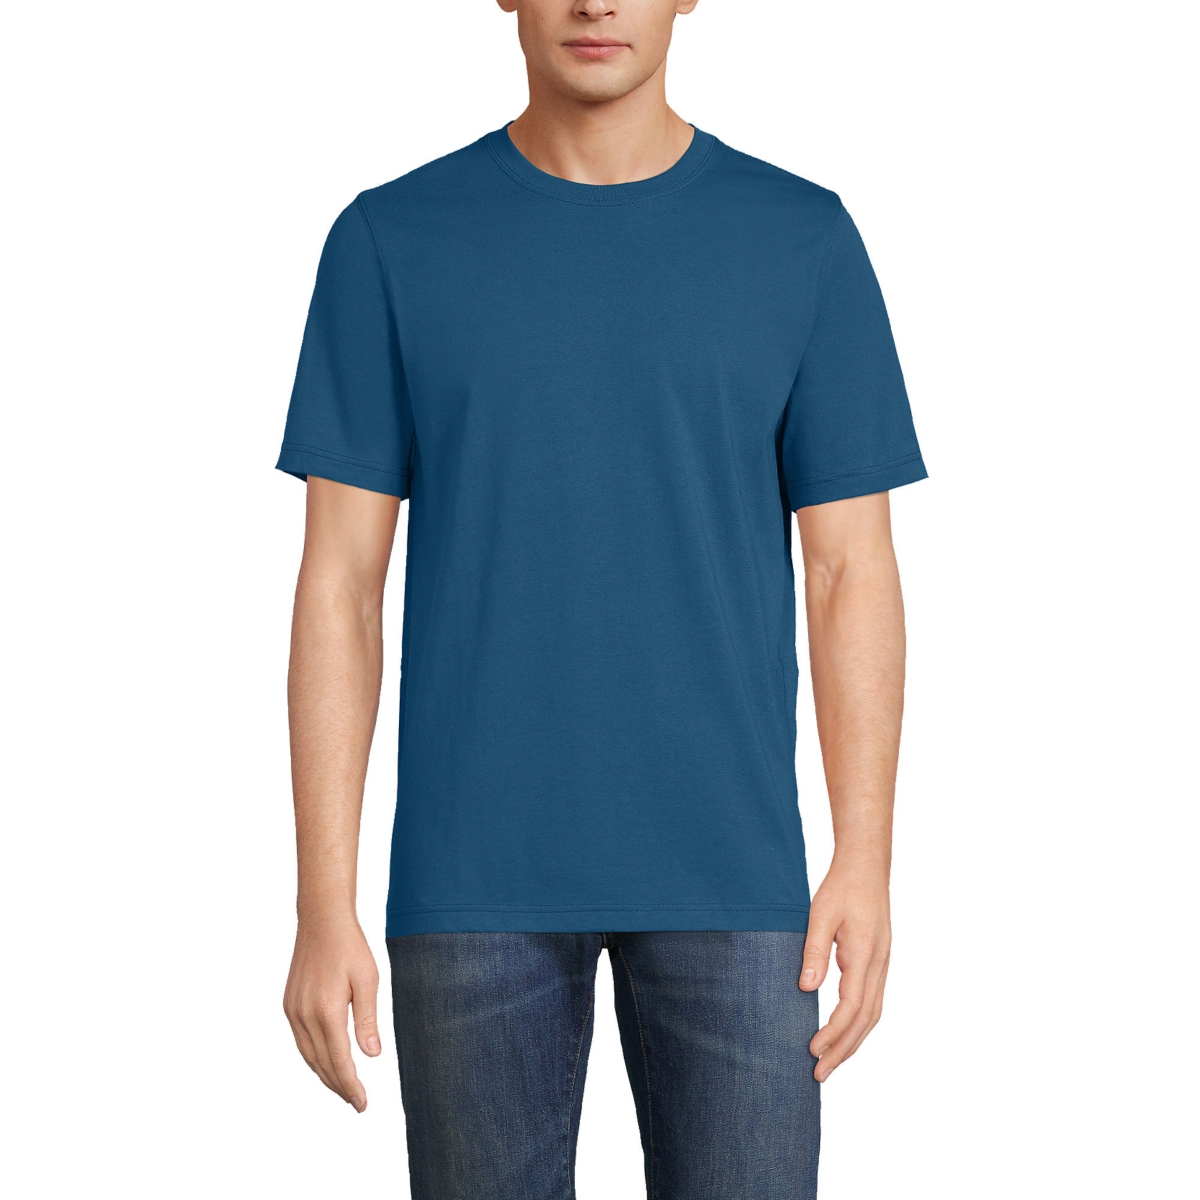 Men's Tall Super-t Short Sleeve T-Shirt - Evening blue